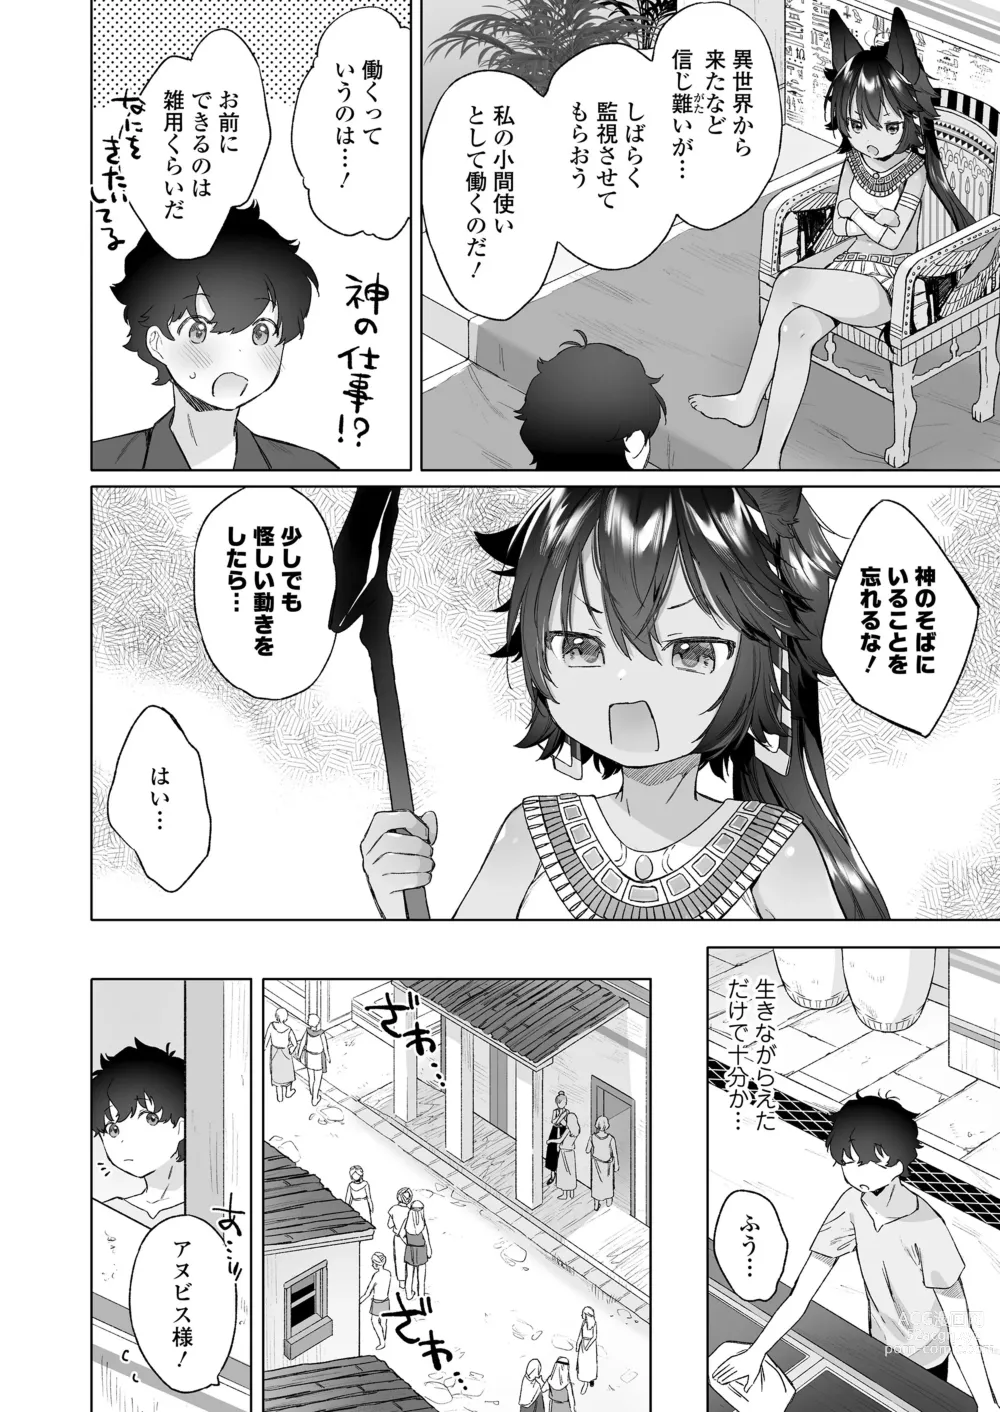 Page 6 of manga Towako 15